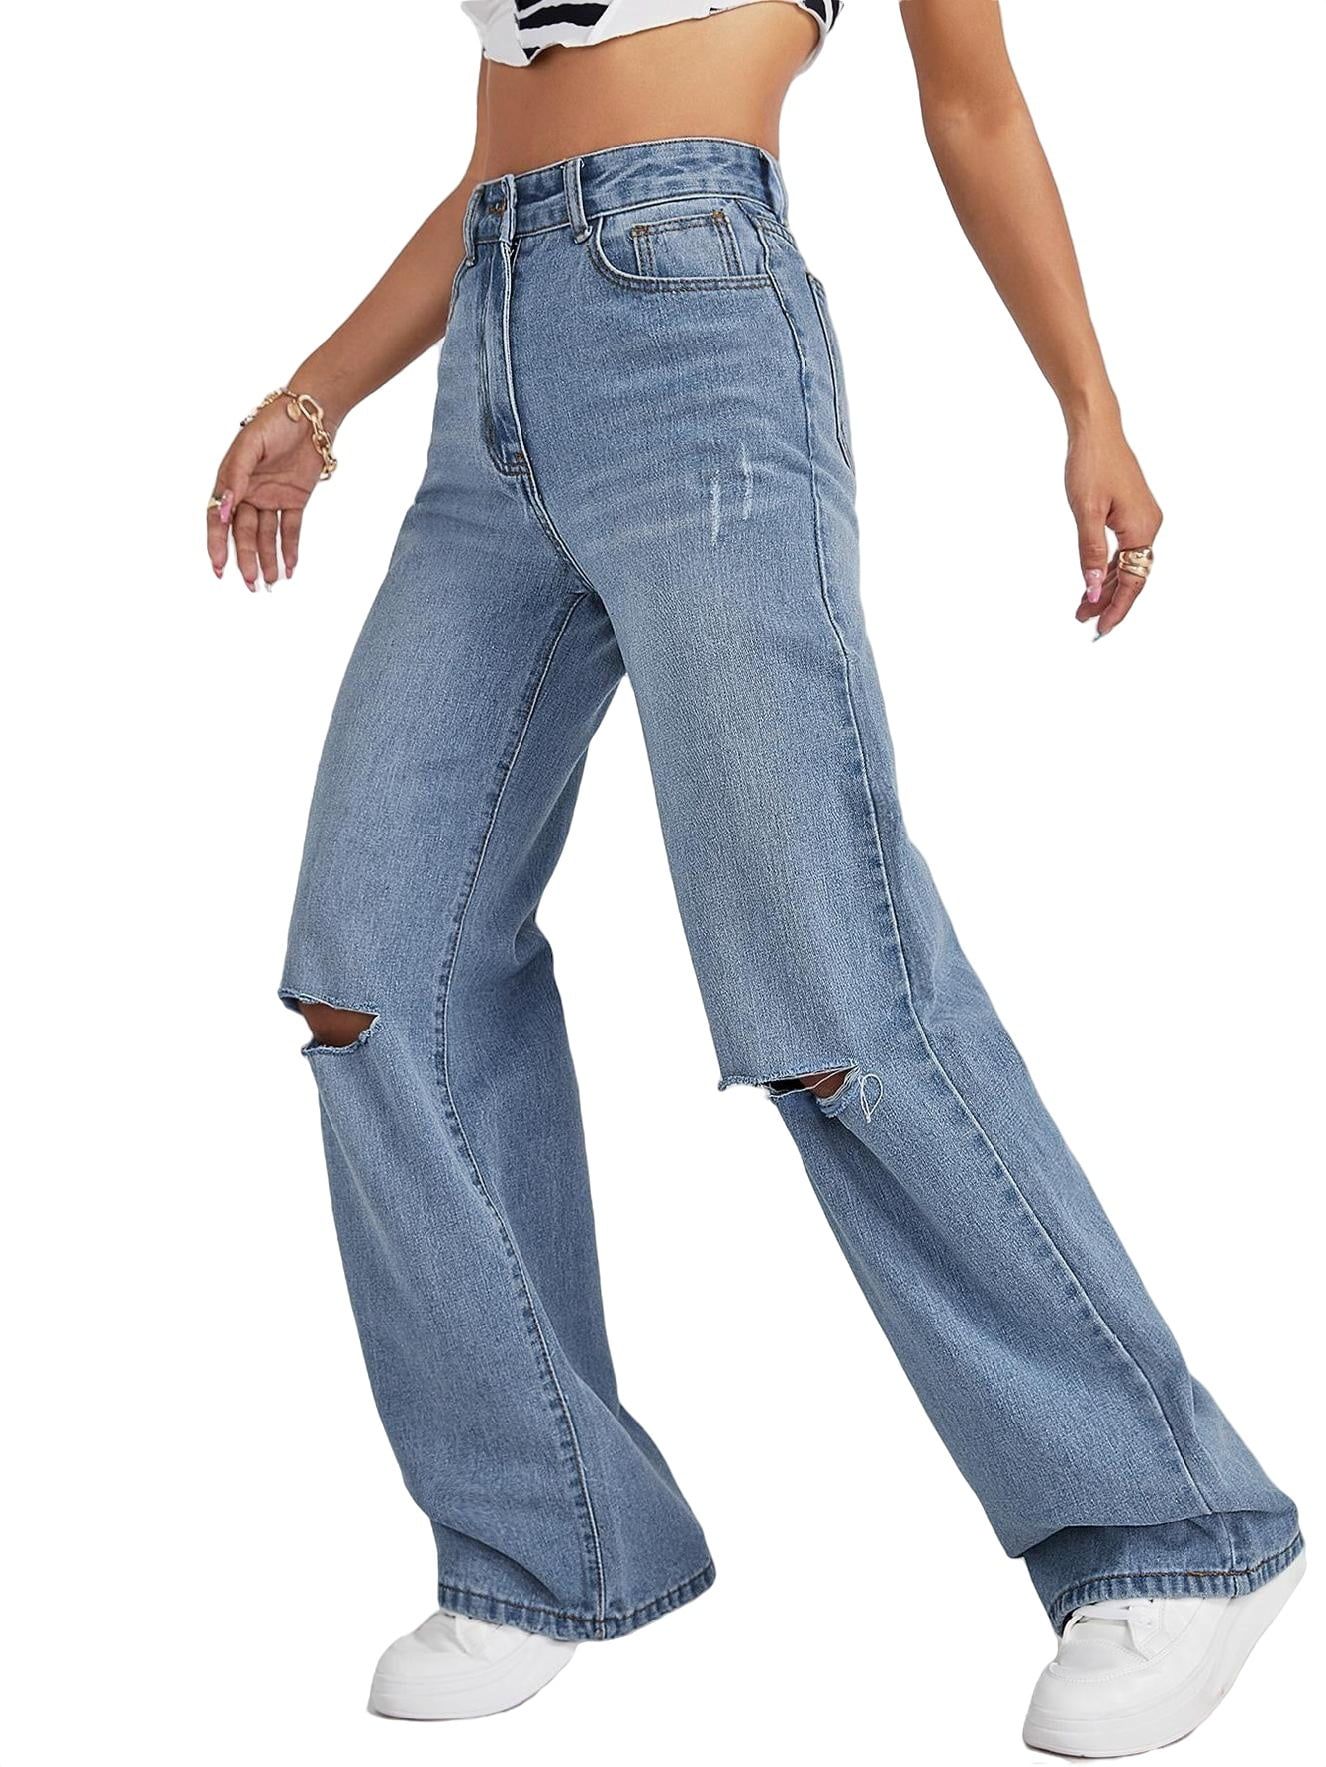 Women's Jeans High Waist Wide Leg Jeans Light Wash XS - Walmart.com | Walmart (US)